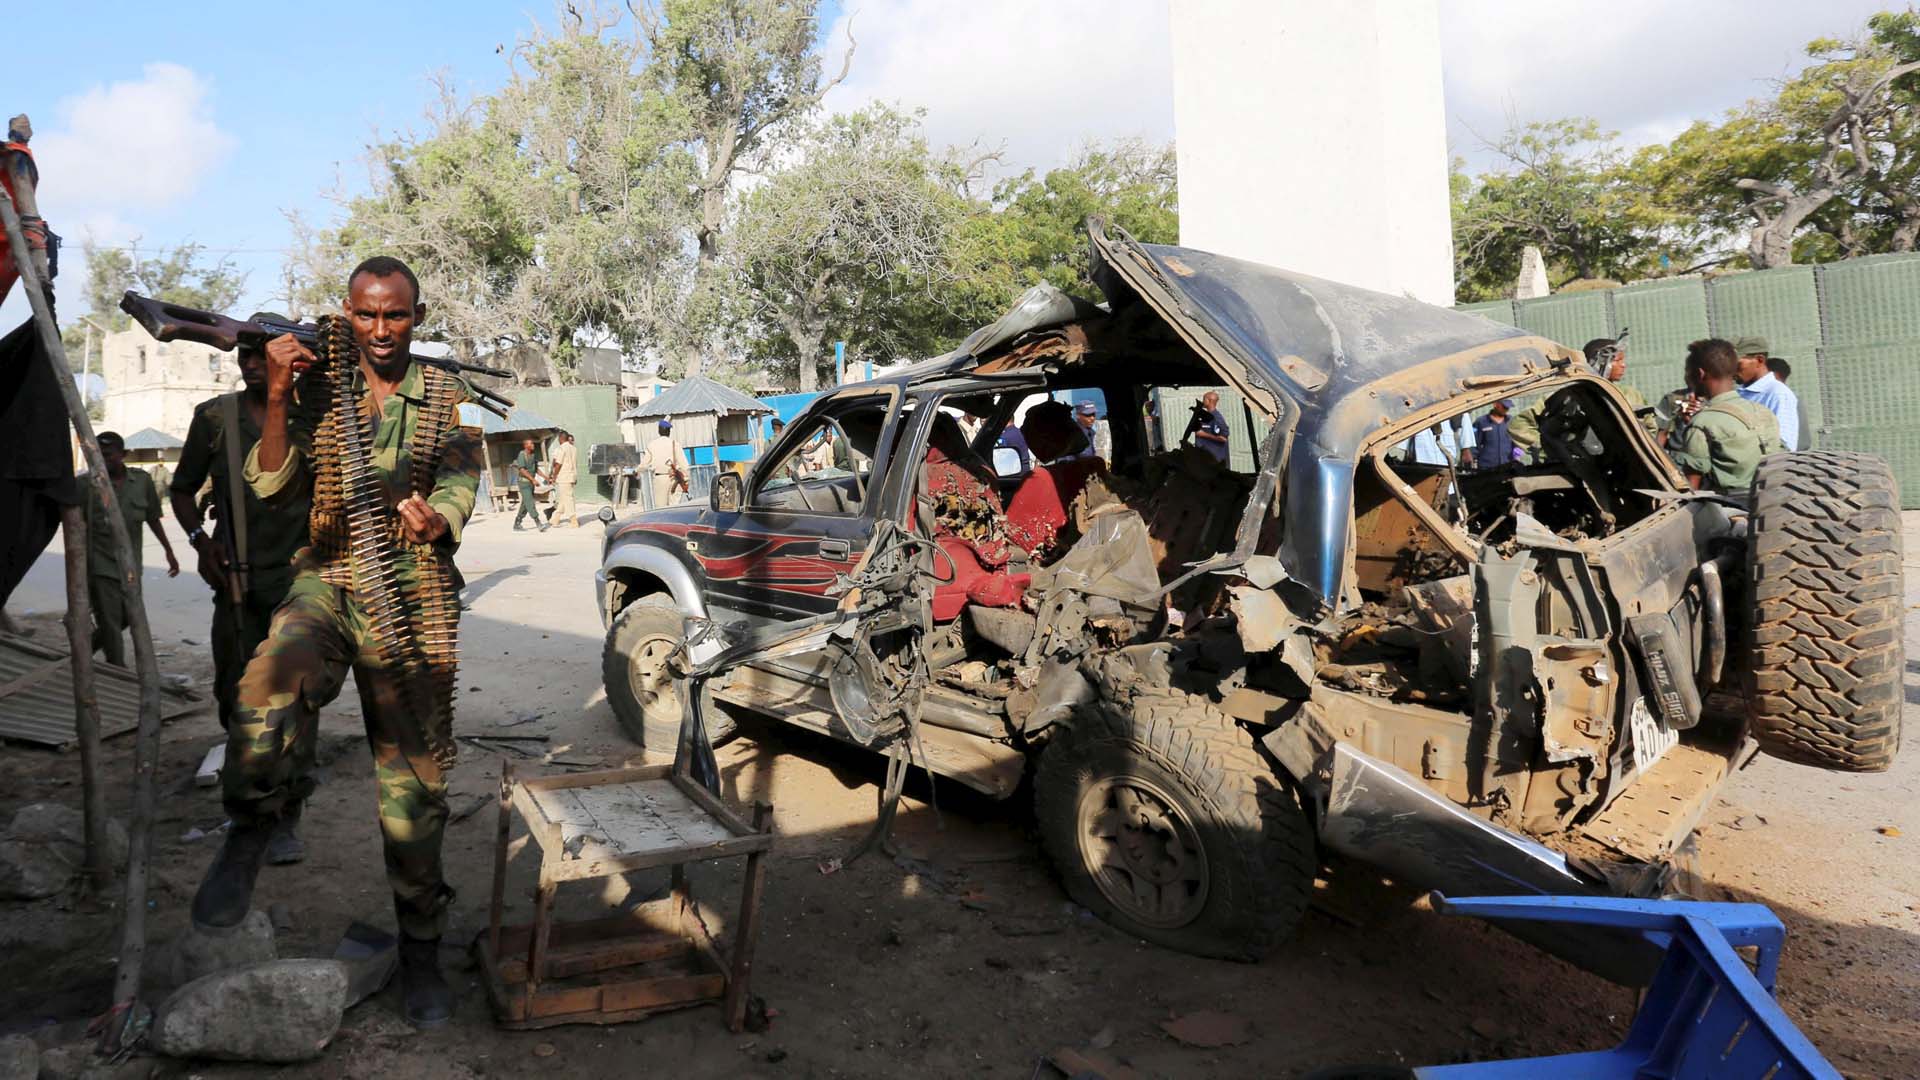 Los fallecidos pertenecían a la milicia Al Shabaab, la cual intenta establecer un Estado islámico en el Cuerno de África